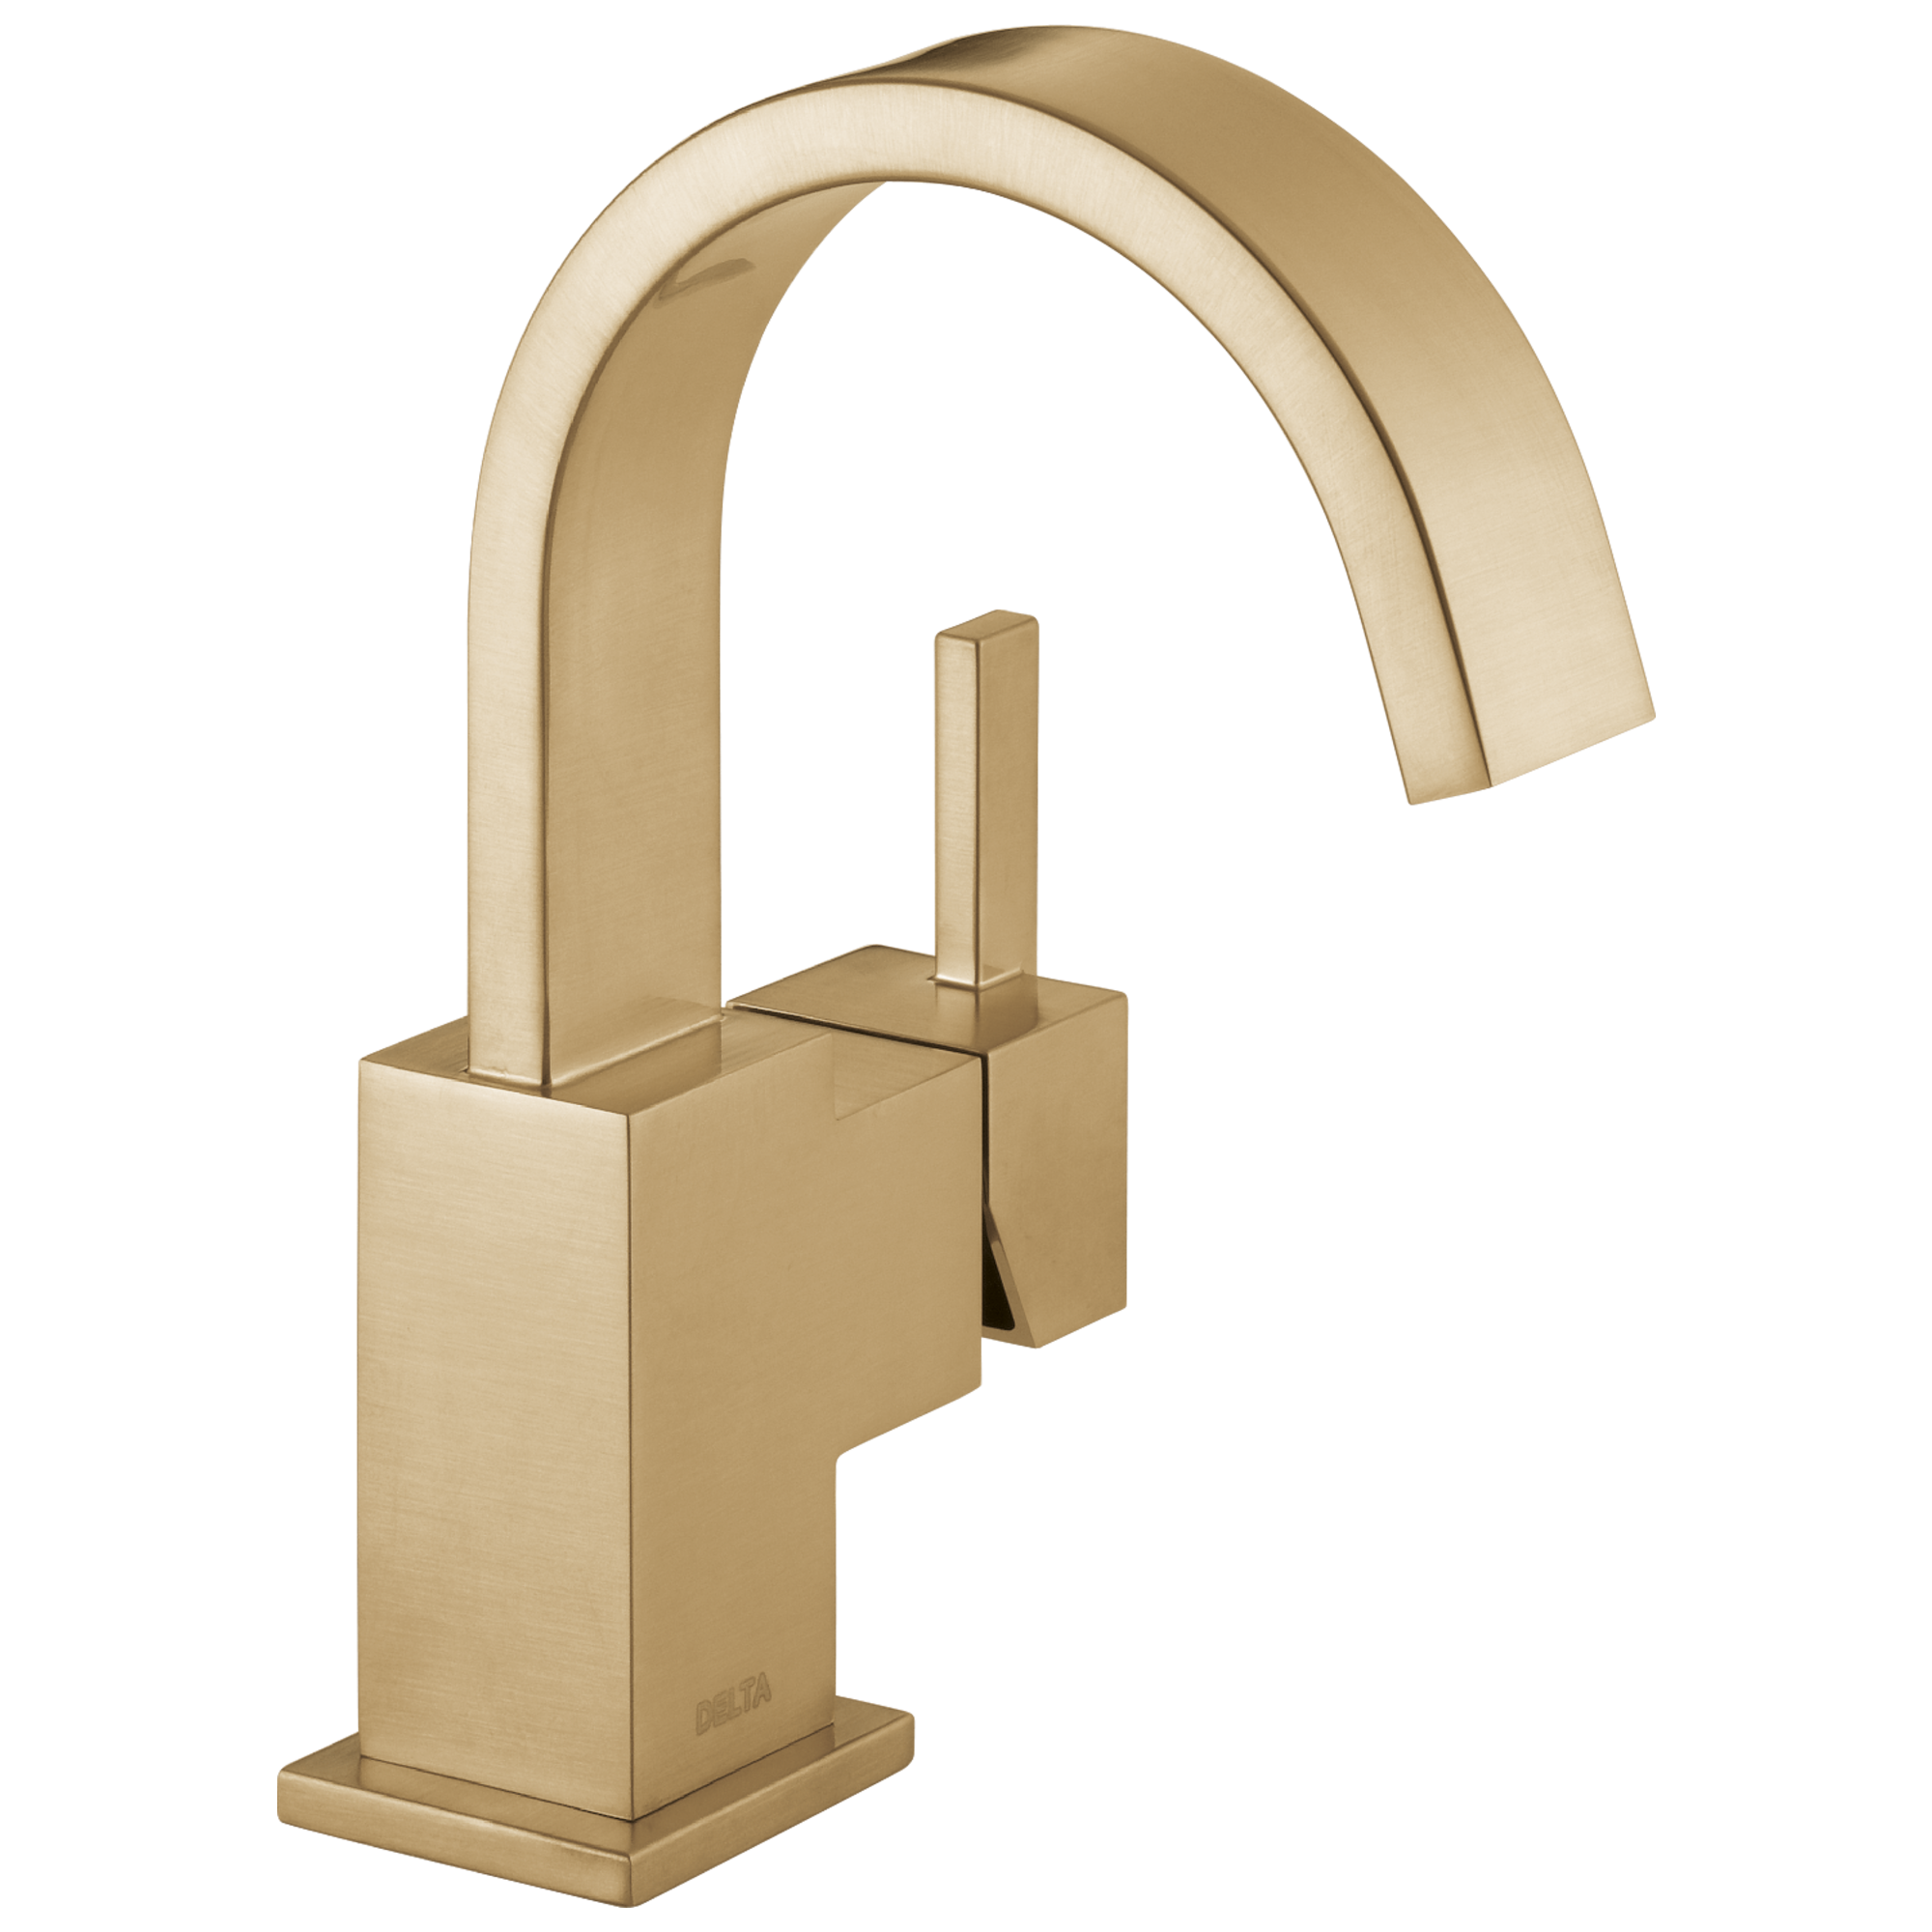 Champagne Bronze Delta Faucet 554LF-CZ Victorian Single Handle Centerset Lavatory Faucet